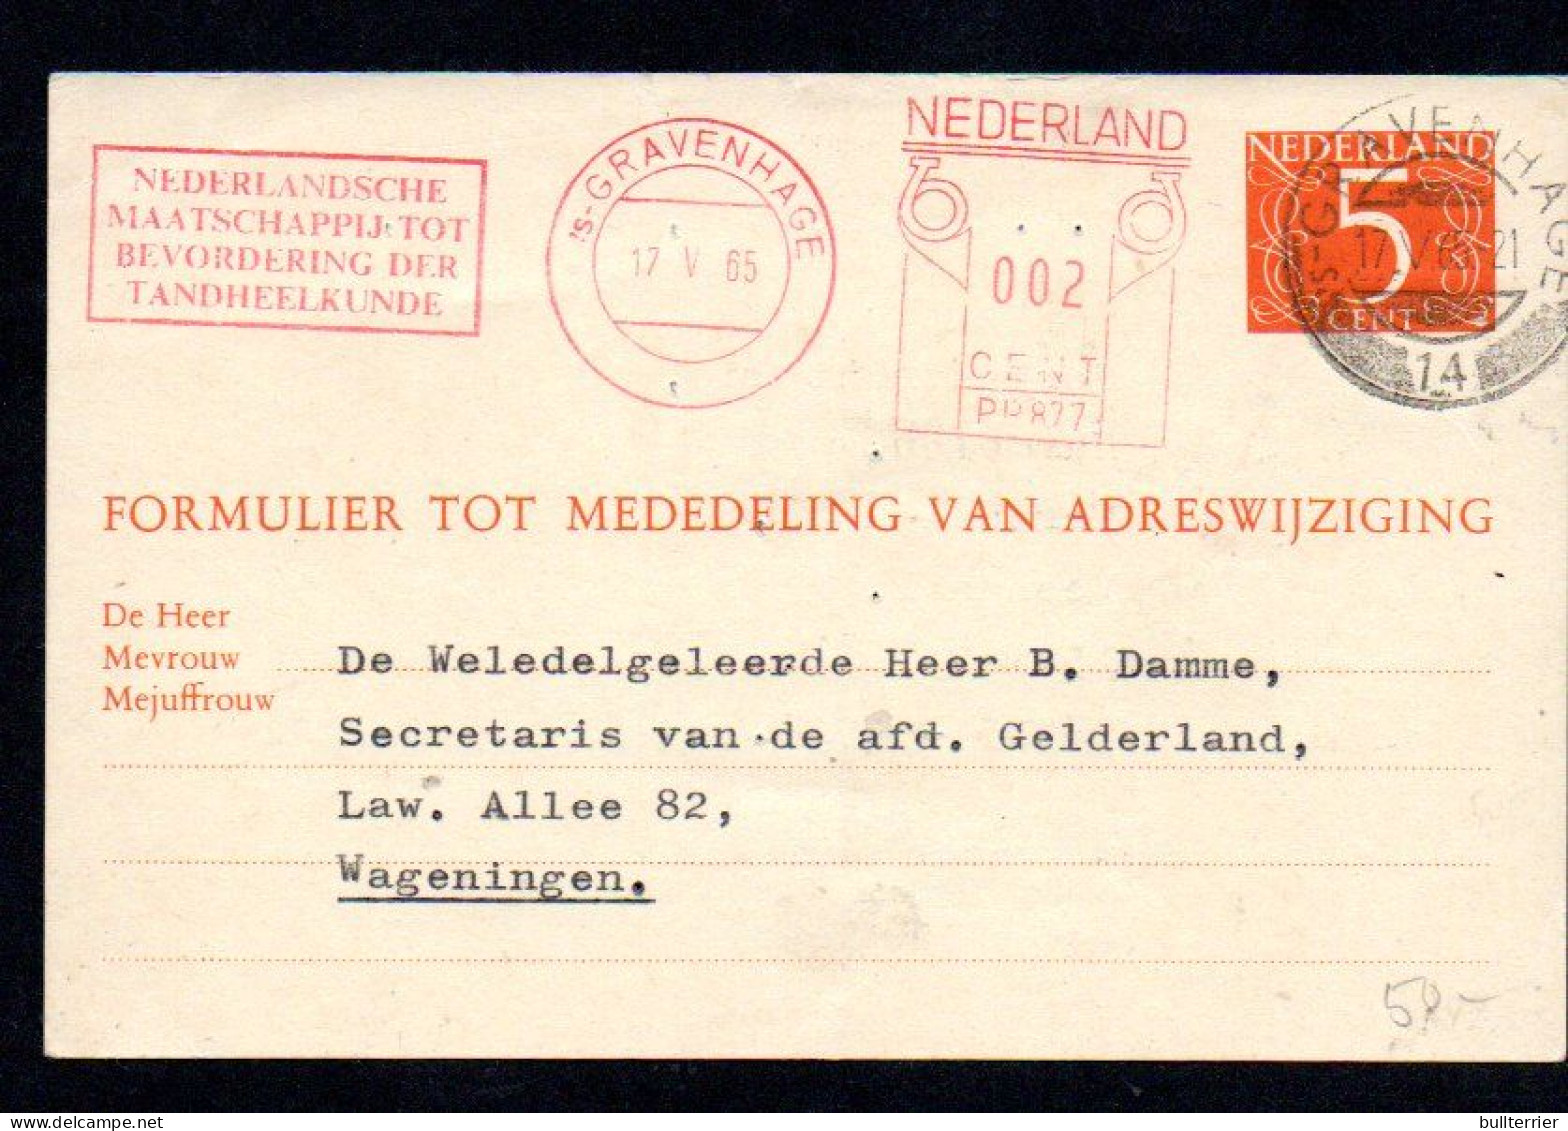 DENISTRY -  NETHERLANDS - 1965- DENTAL COVER WAGENINGE WITH SLOGAN POSTMARK - Geneeskunde